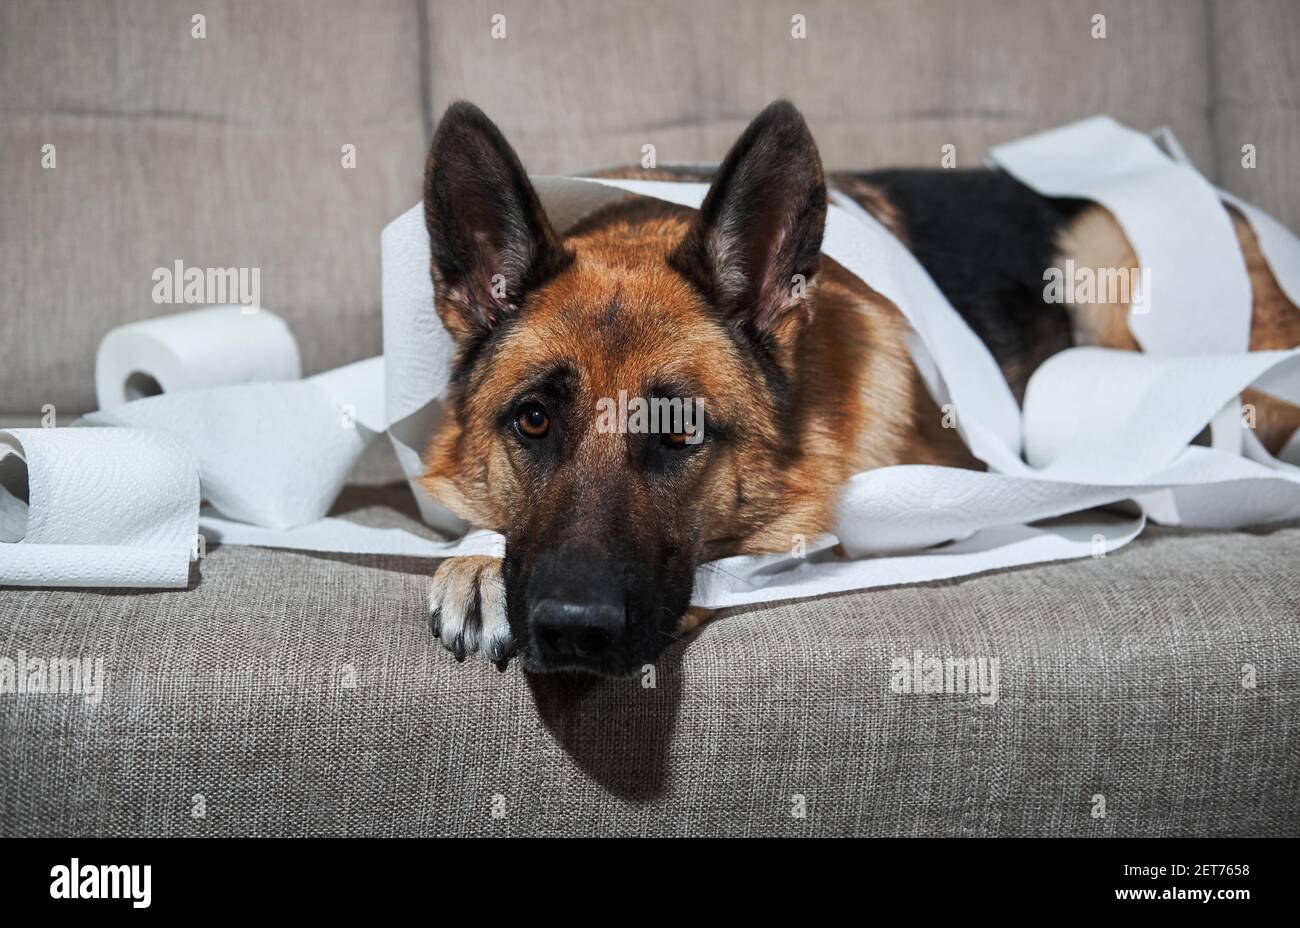 Le Berger allemand est couché sur un canapé gris enveloppé de papier  toilette. Le chien s'est peu lassé lorsqu'il est laissé seul à la maison et  a mangé plusieurs rouleaux de papier